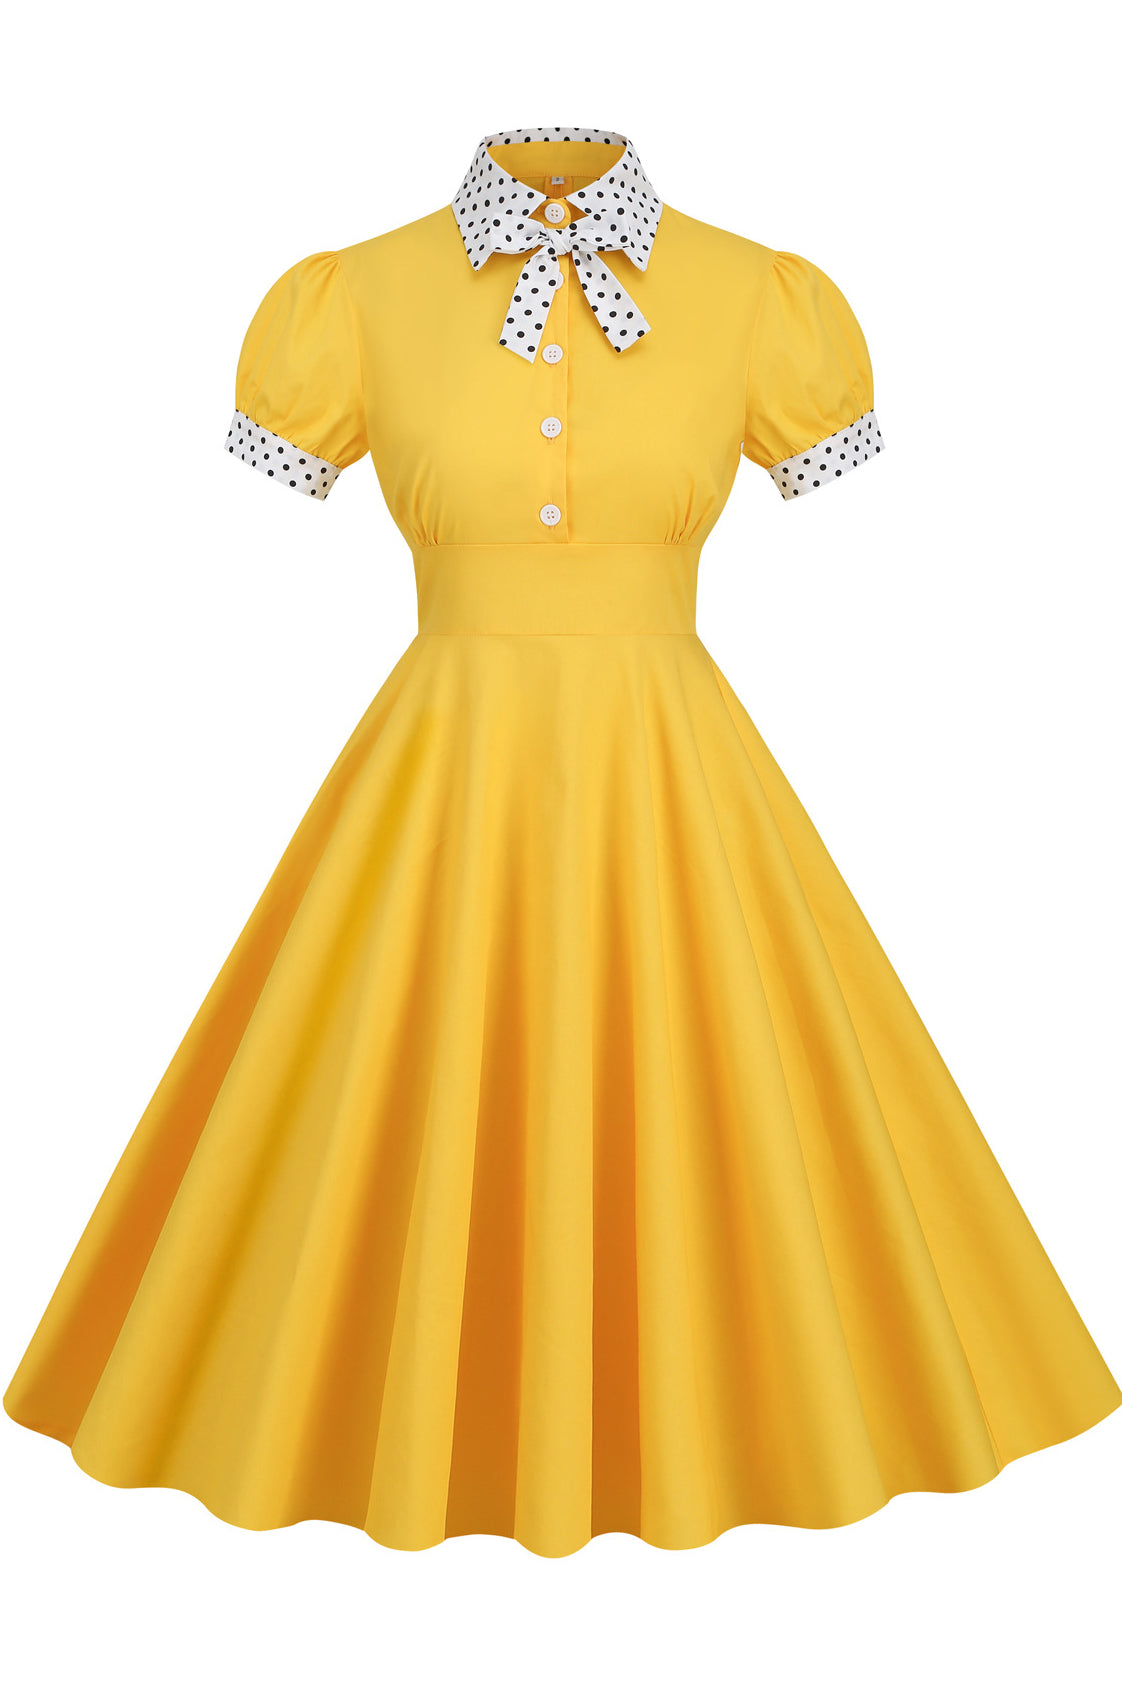 Herbene Yellow Shirt Collar A-line Dress